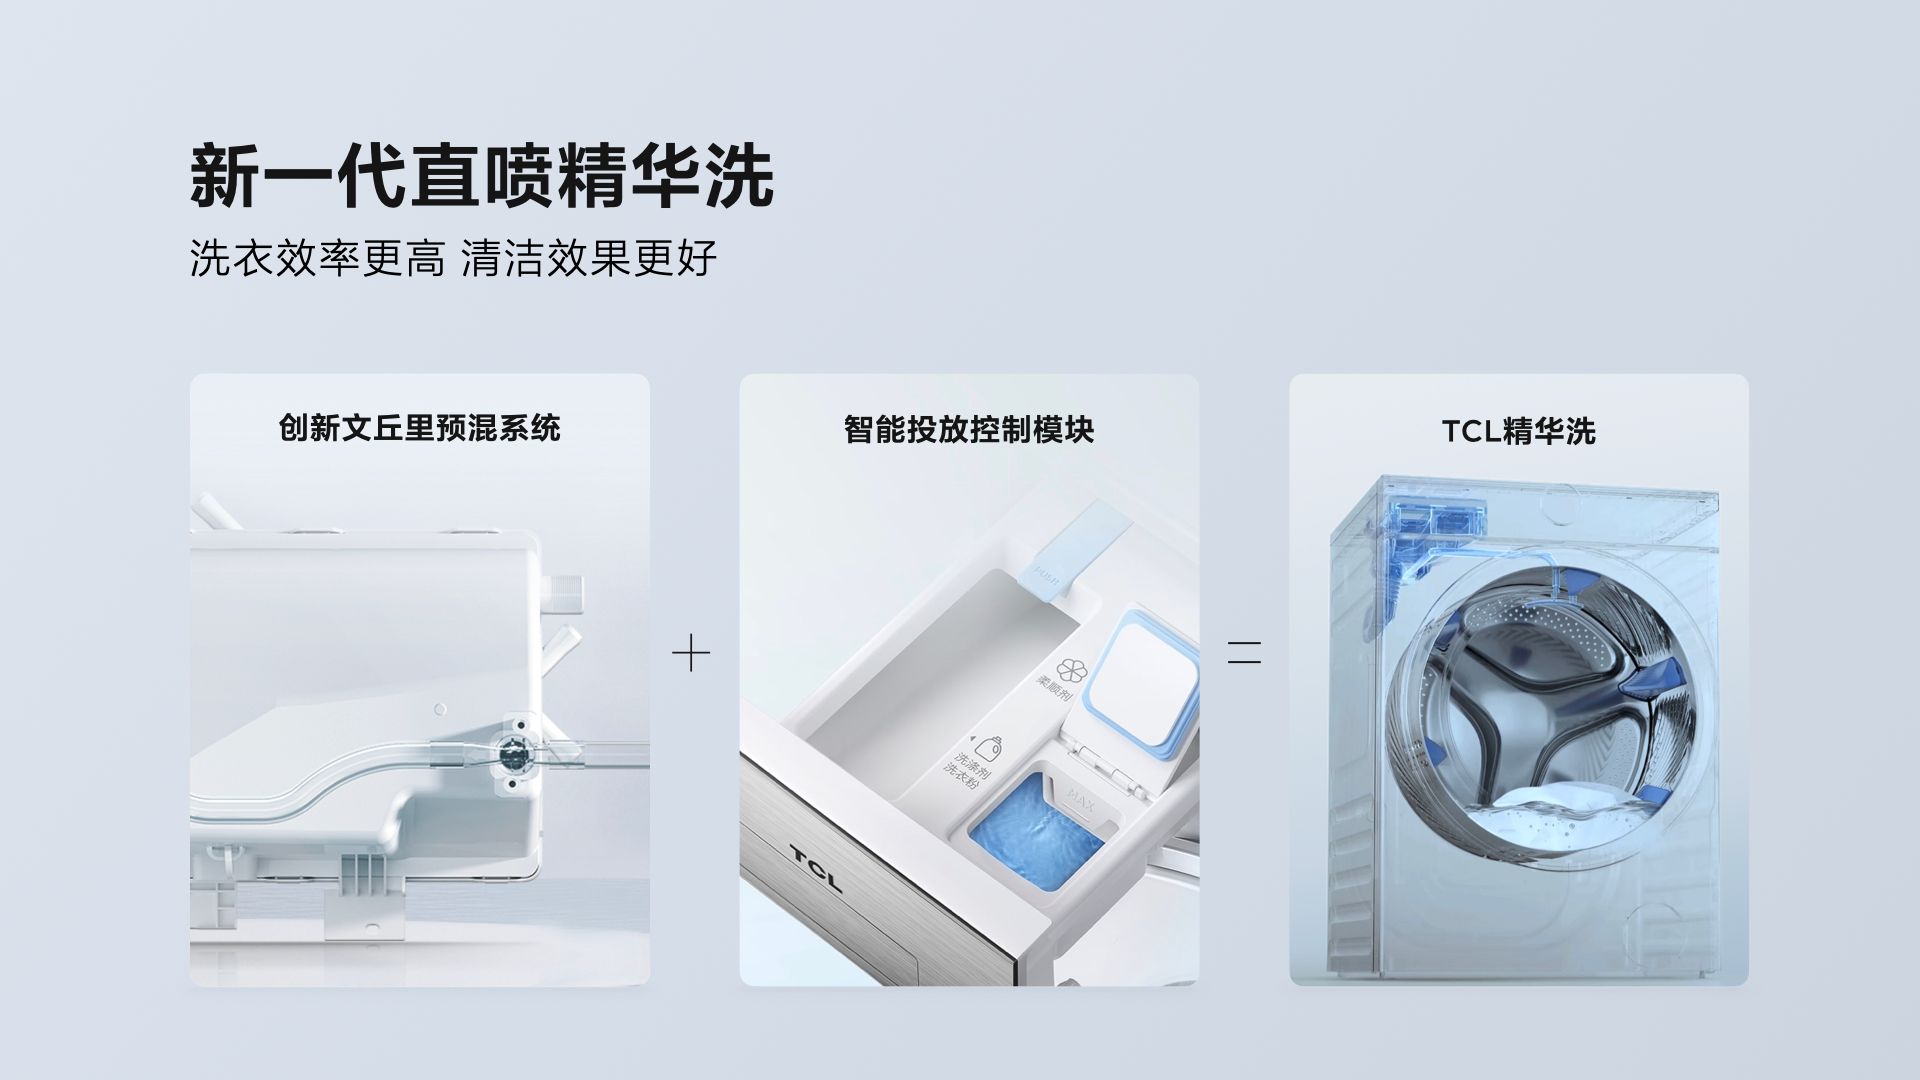 TCL超级筒洗衣机发售，首创超级筒科技，洗净比登顶行业第一